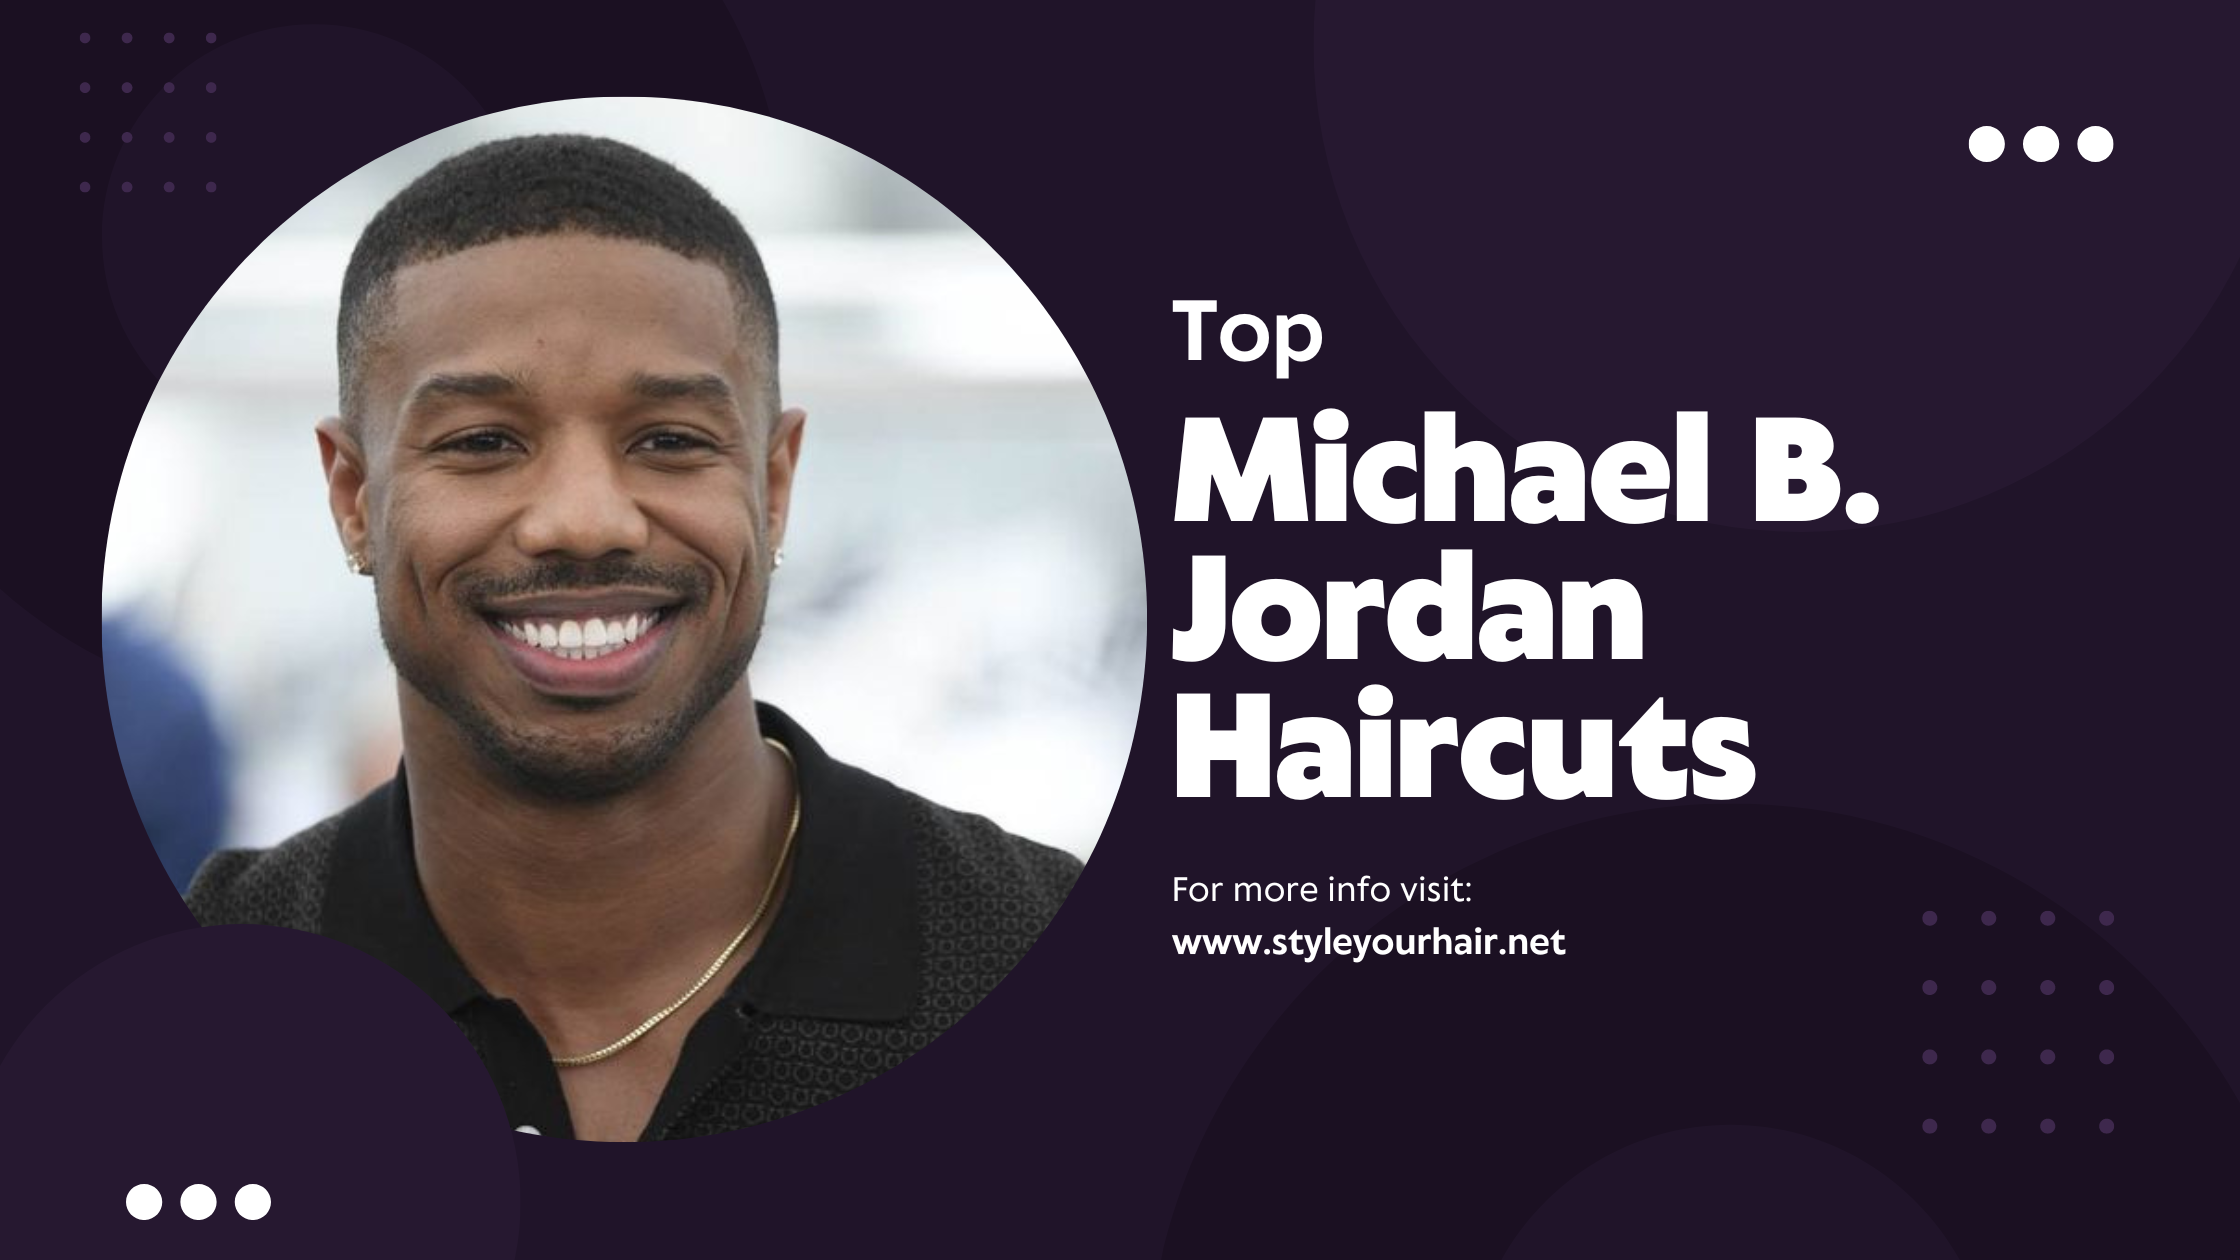 Michael B. Jordan Haircuts